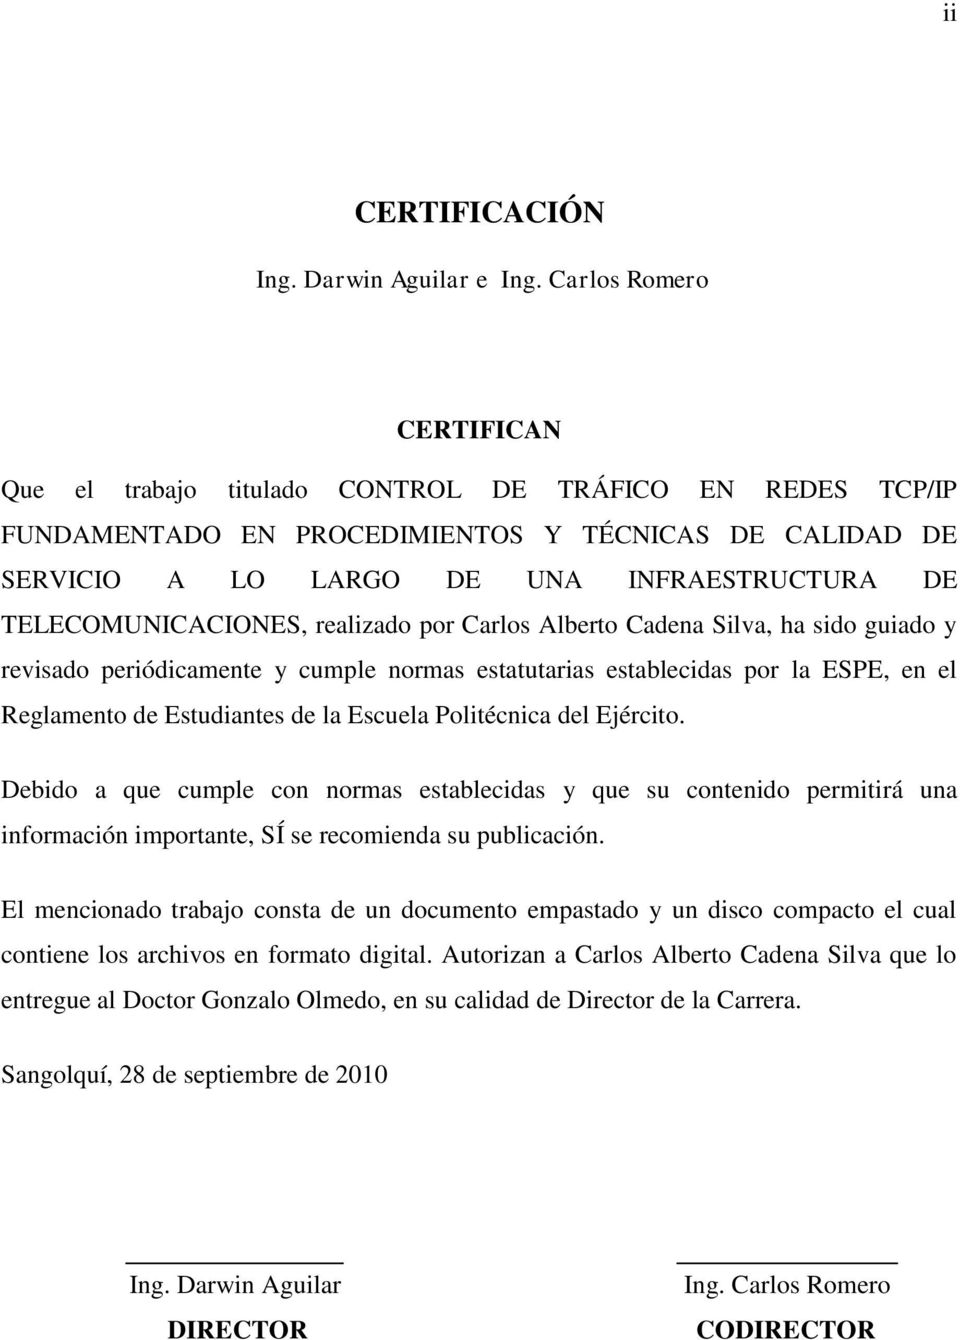 TELECOMUNICACIONES, realizado por Carlos Alberto Cadena Silva, ha sido guiado y revisado periódicamente y cumple normas estatutarias establecidas por la ESPE, en el Reglamento de Estudiantes de la